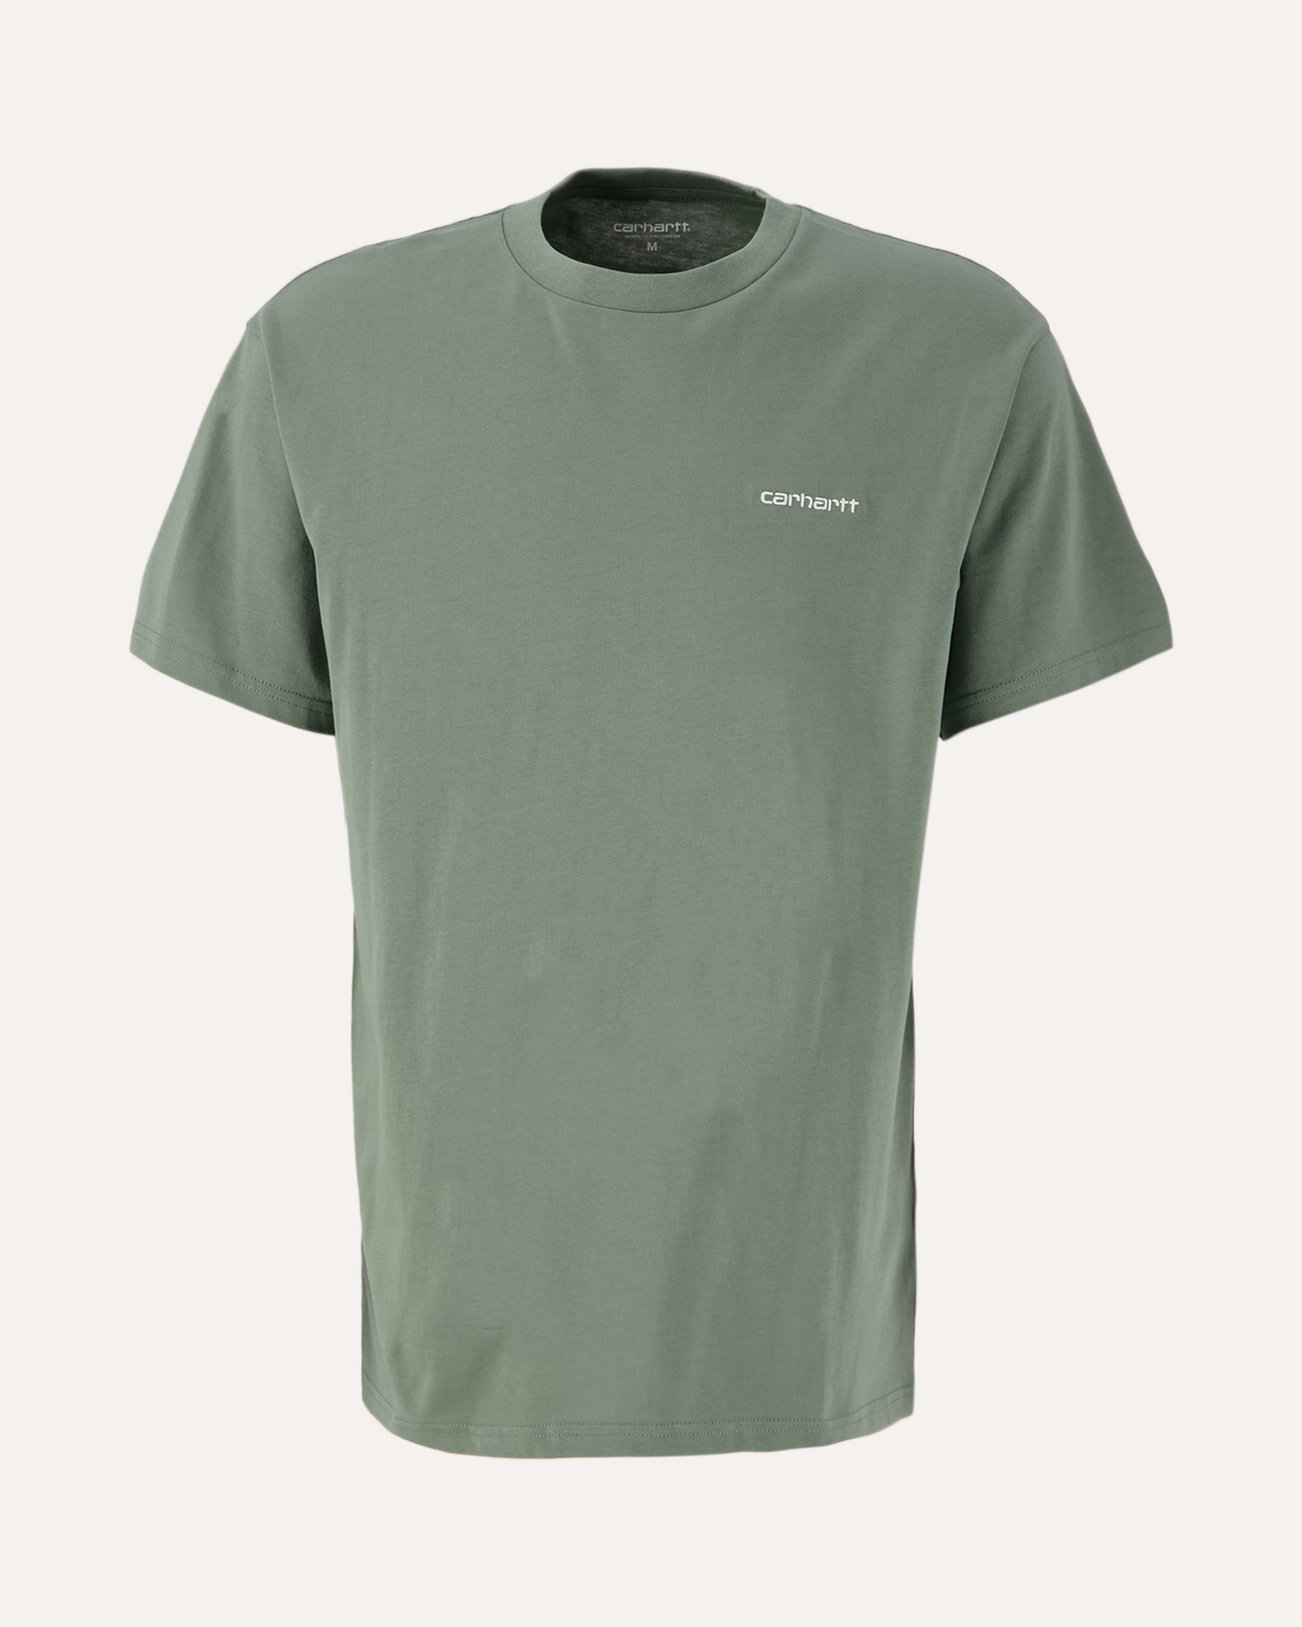 Carhartt WIP S/S Script Embroidery T-Shirt GROEN 1